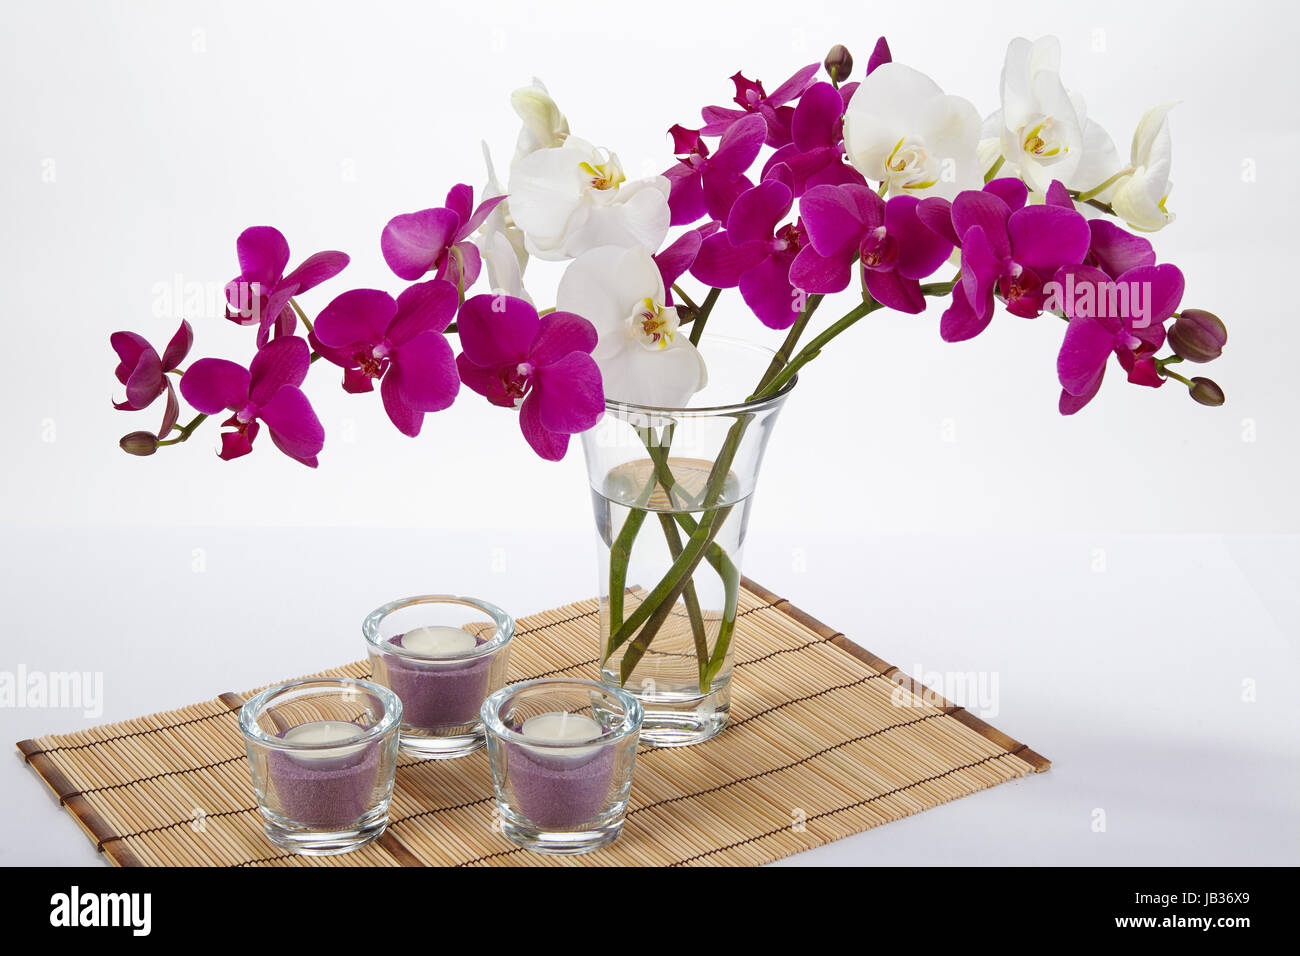 Orquídeas artificiales para decoración del hogar, florero plateado  interior, orquídeas flores artificiales (morado)